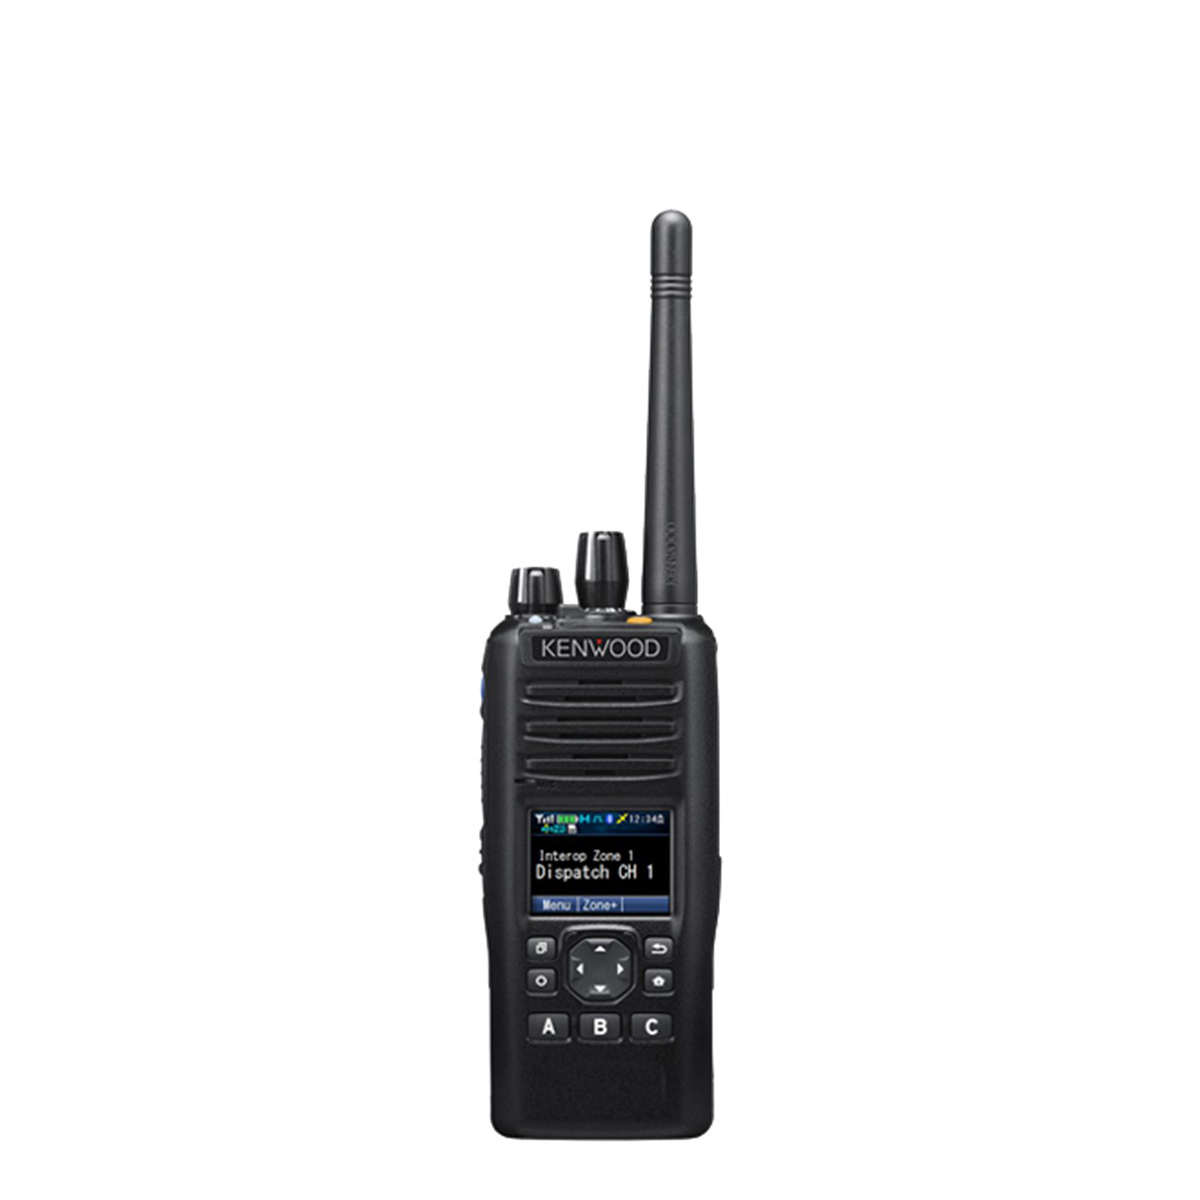 Radio Kenwood Digital NX-5400 700/800 MHz con Teclado Limitado